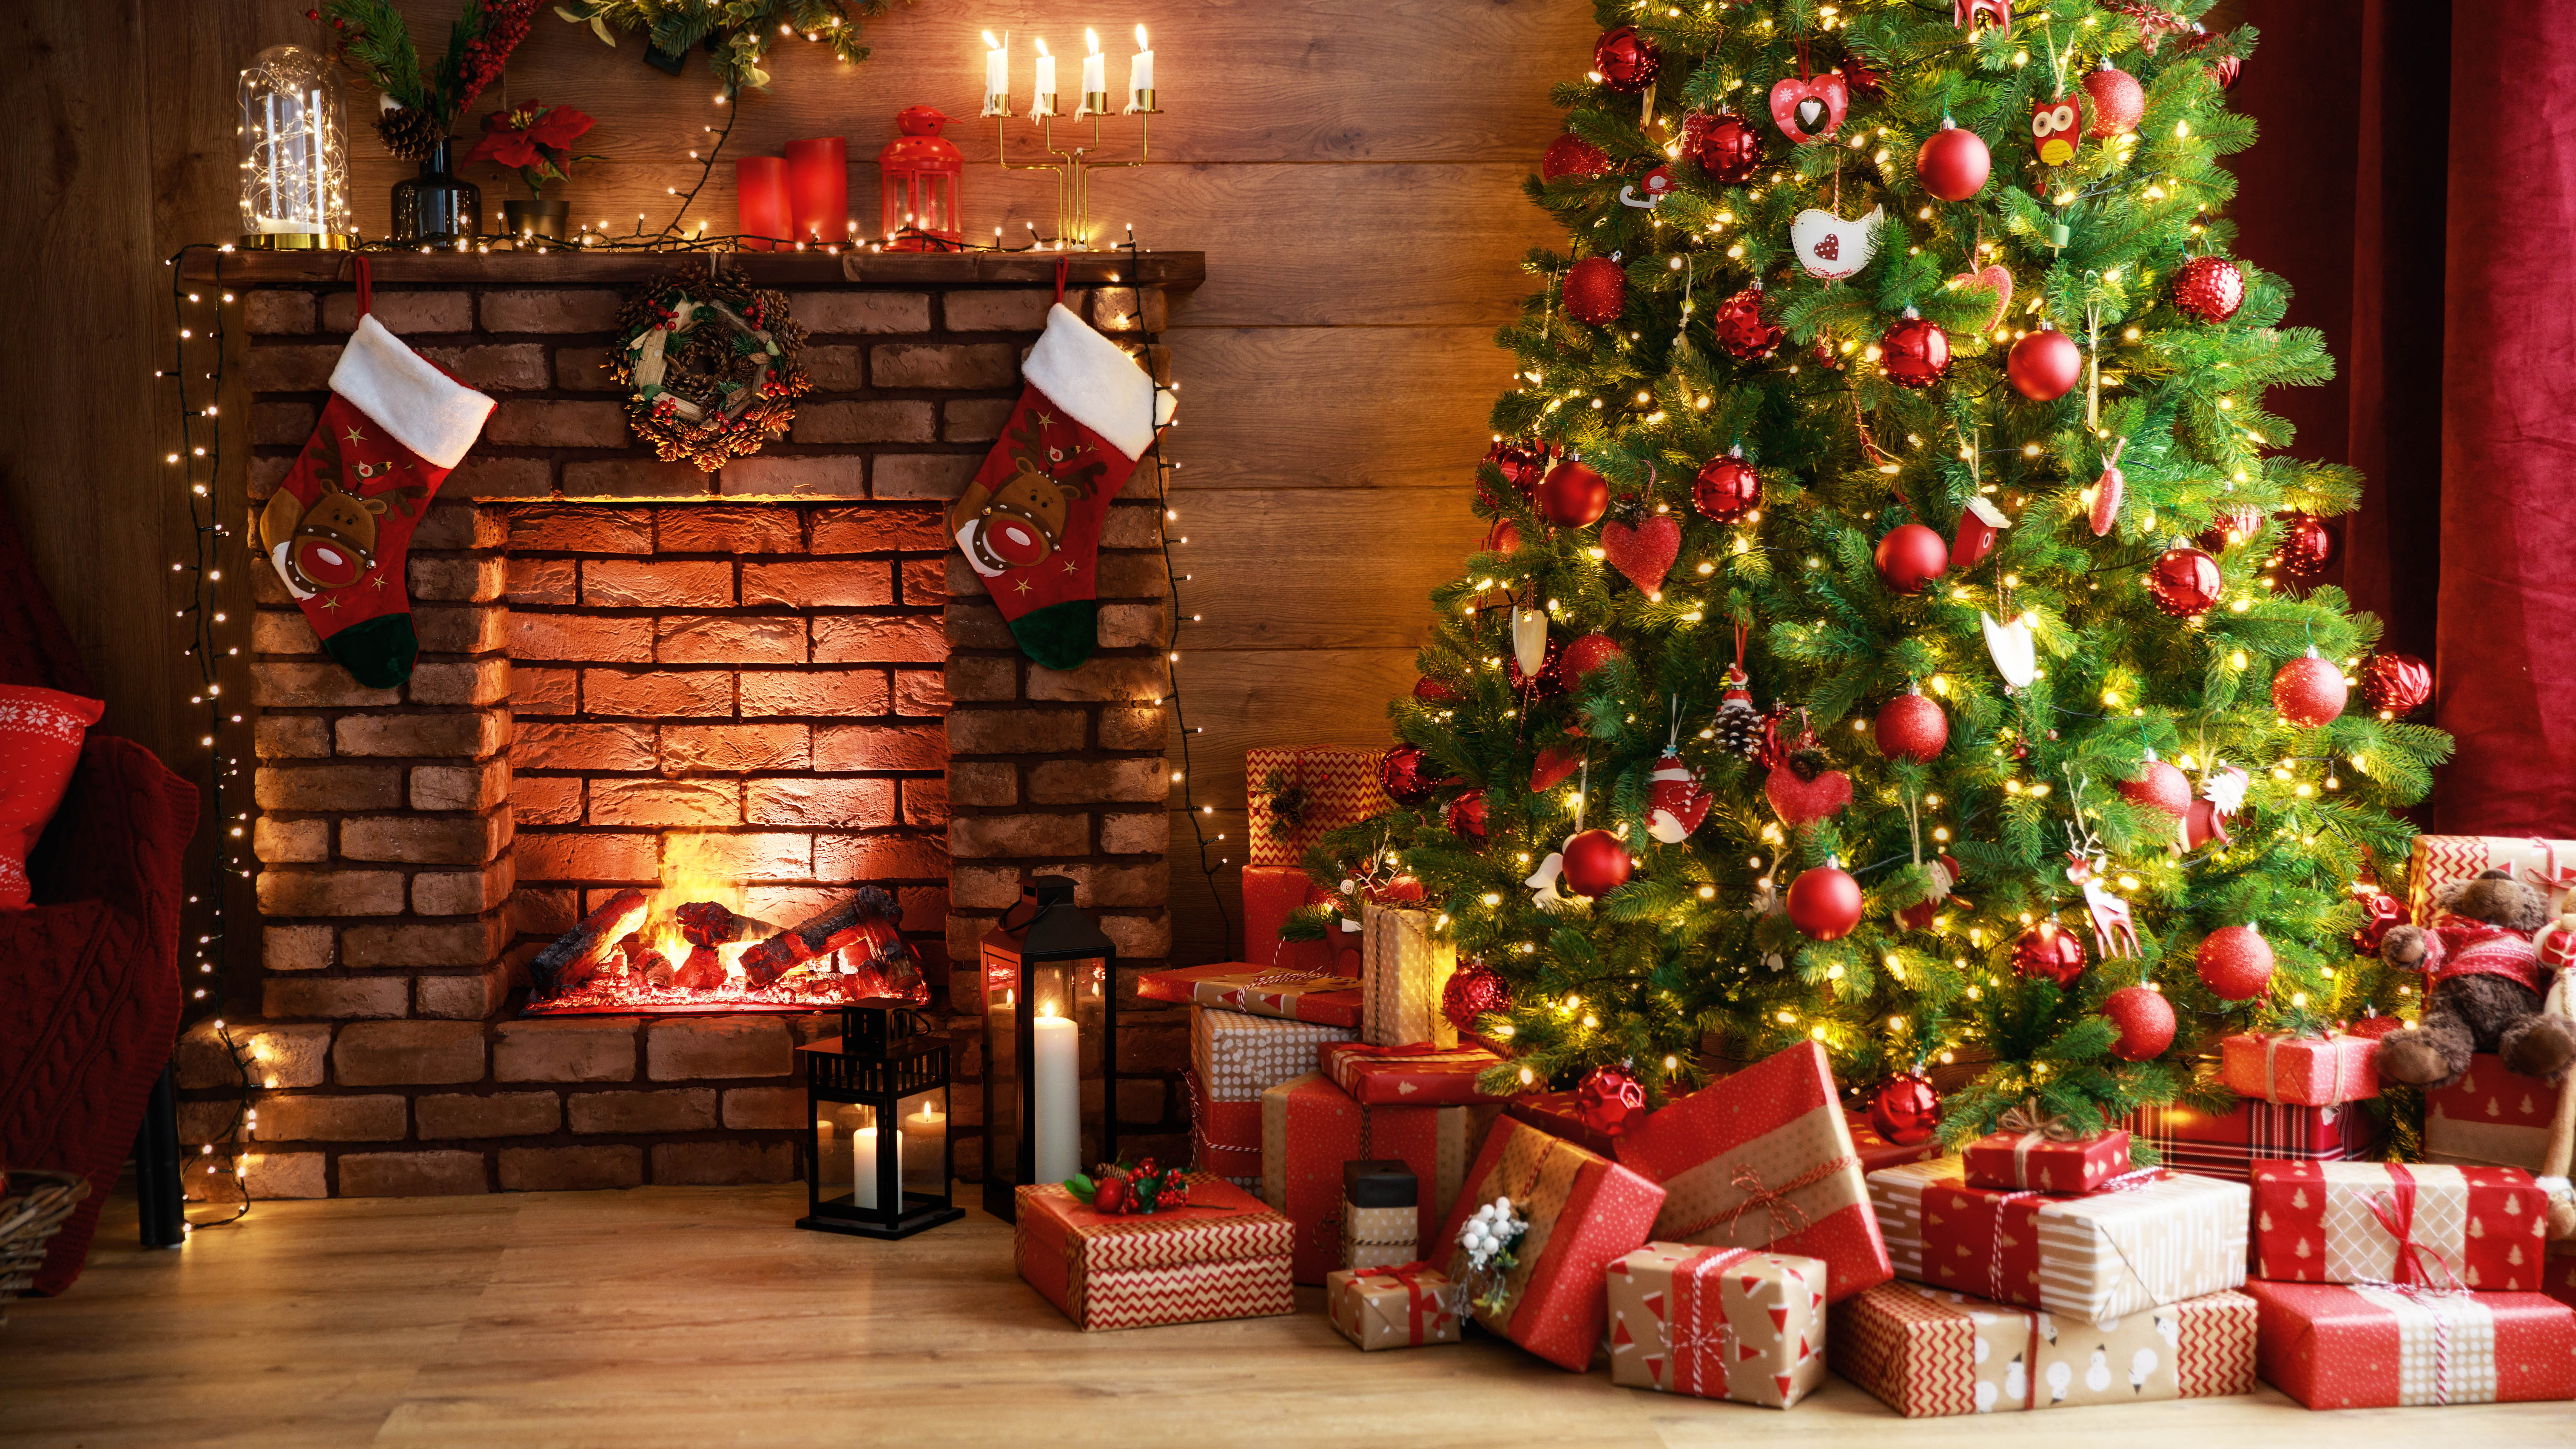 شجرة عيد الميلاد مزينة بالهدايا أسفلها بجوار المدفأة